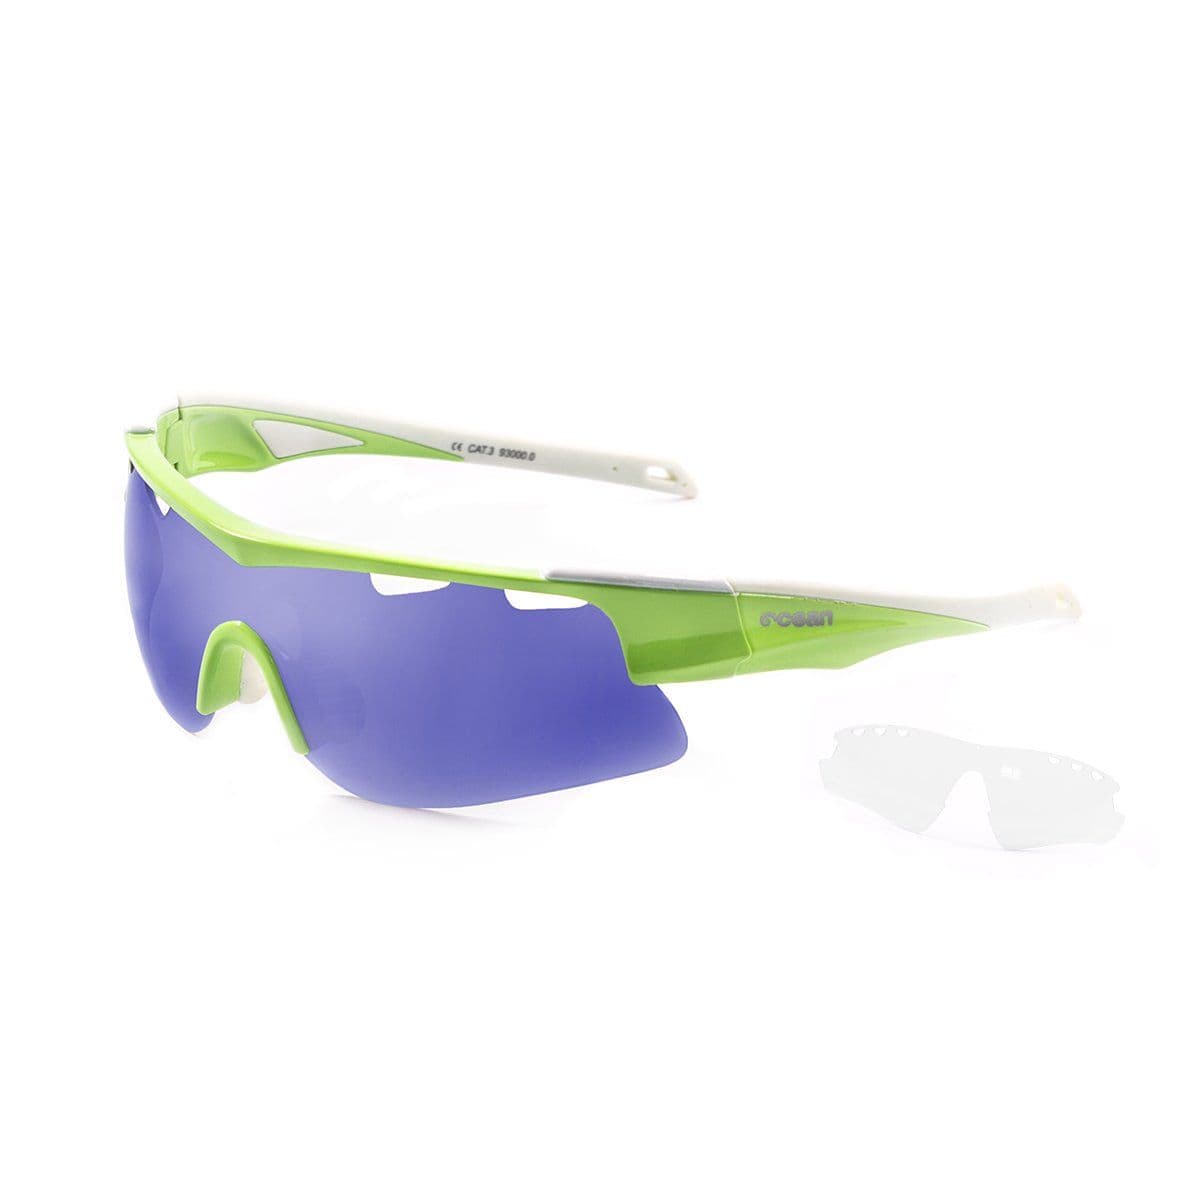 Ocean Alpine Sunglasses